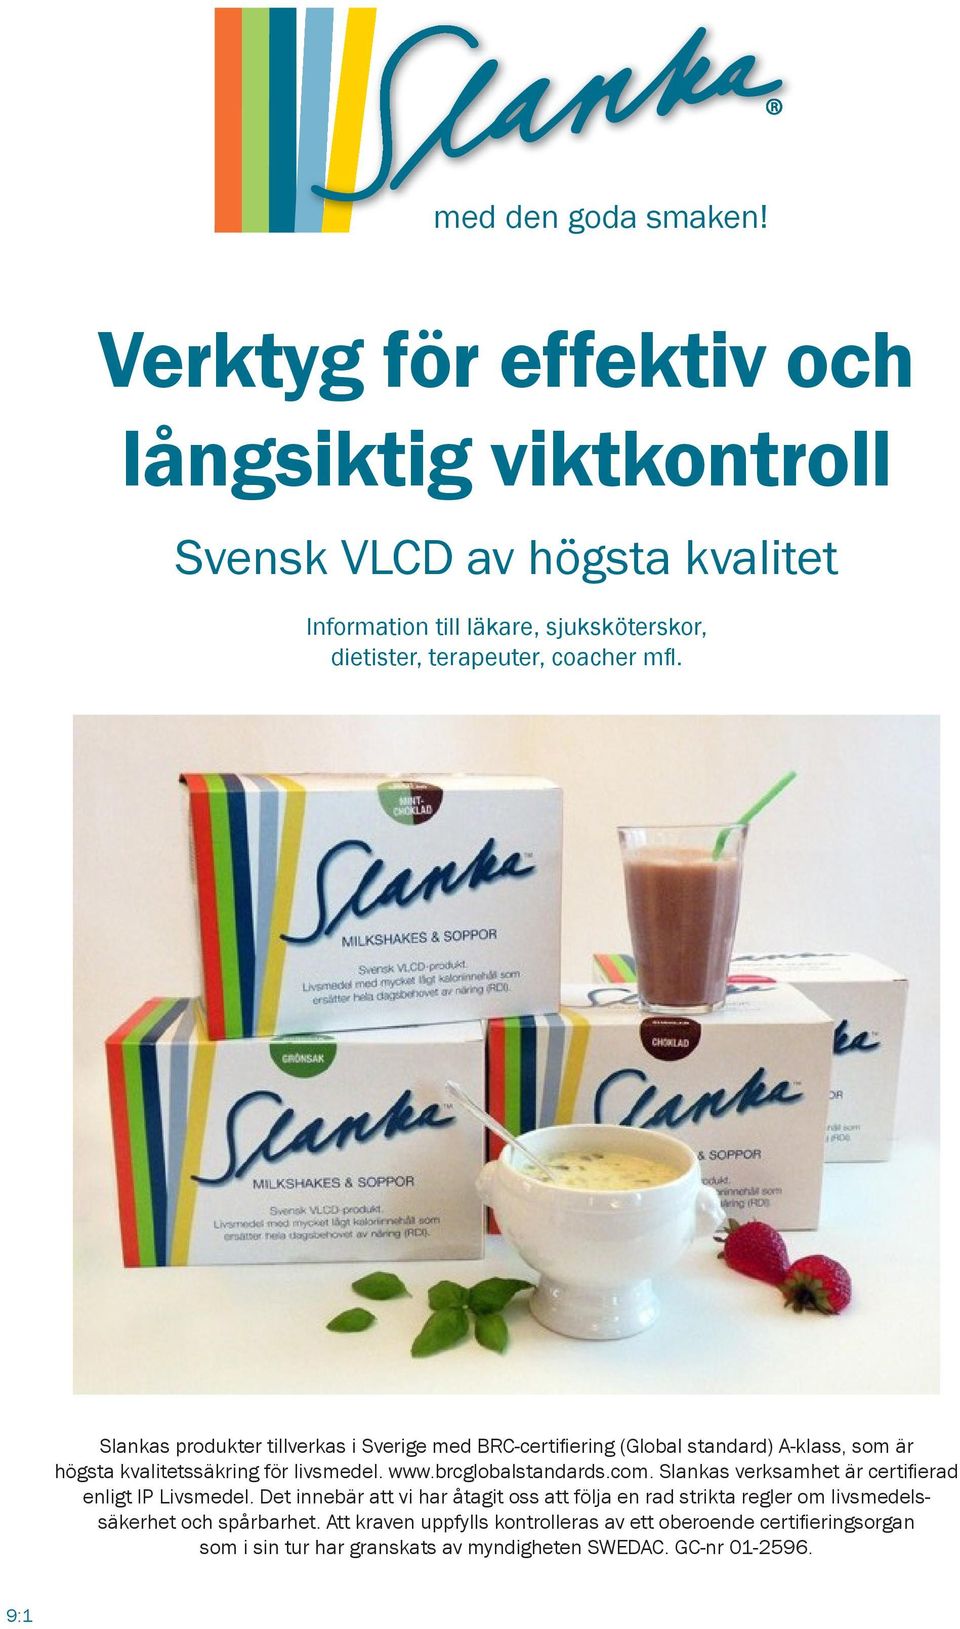 Slankas produkter tillverkas i Sverige med BRC-certifiering (Global standard) A-klass, som är högsta kvalitetssäkring för livsmedel. www.brcglobalstandards.